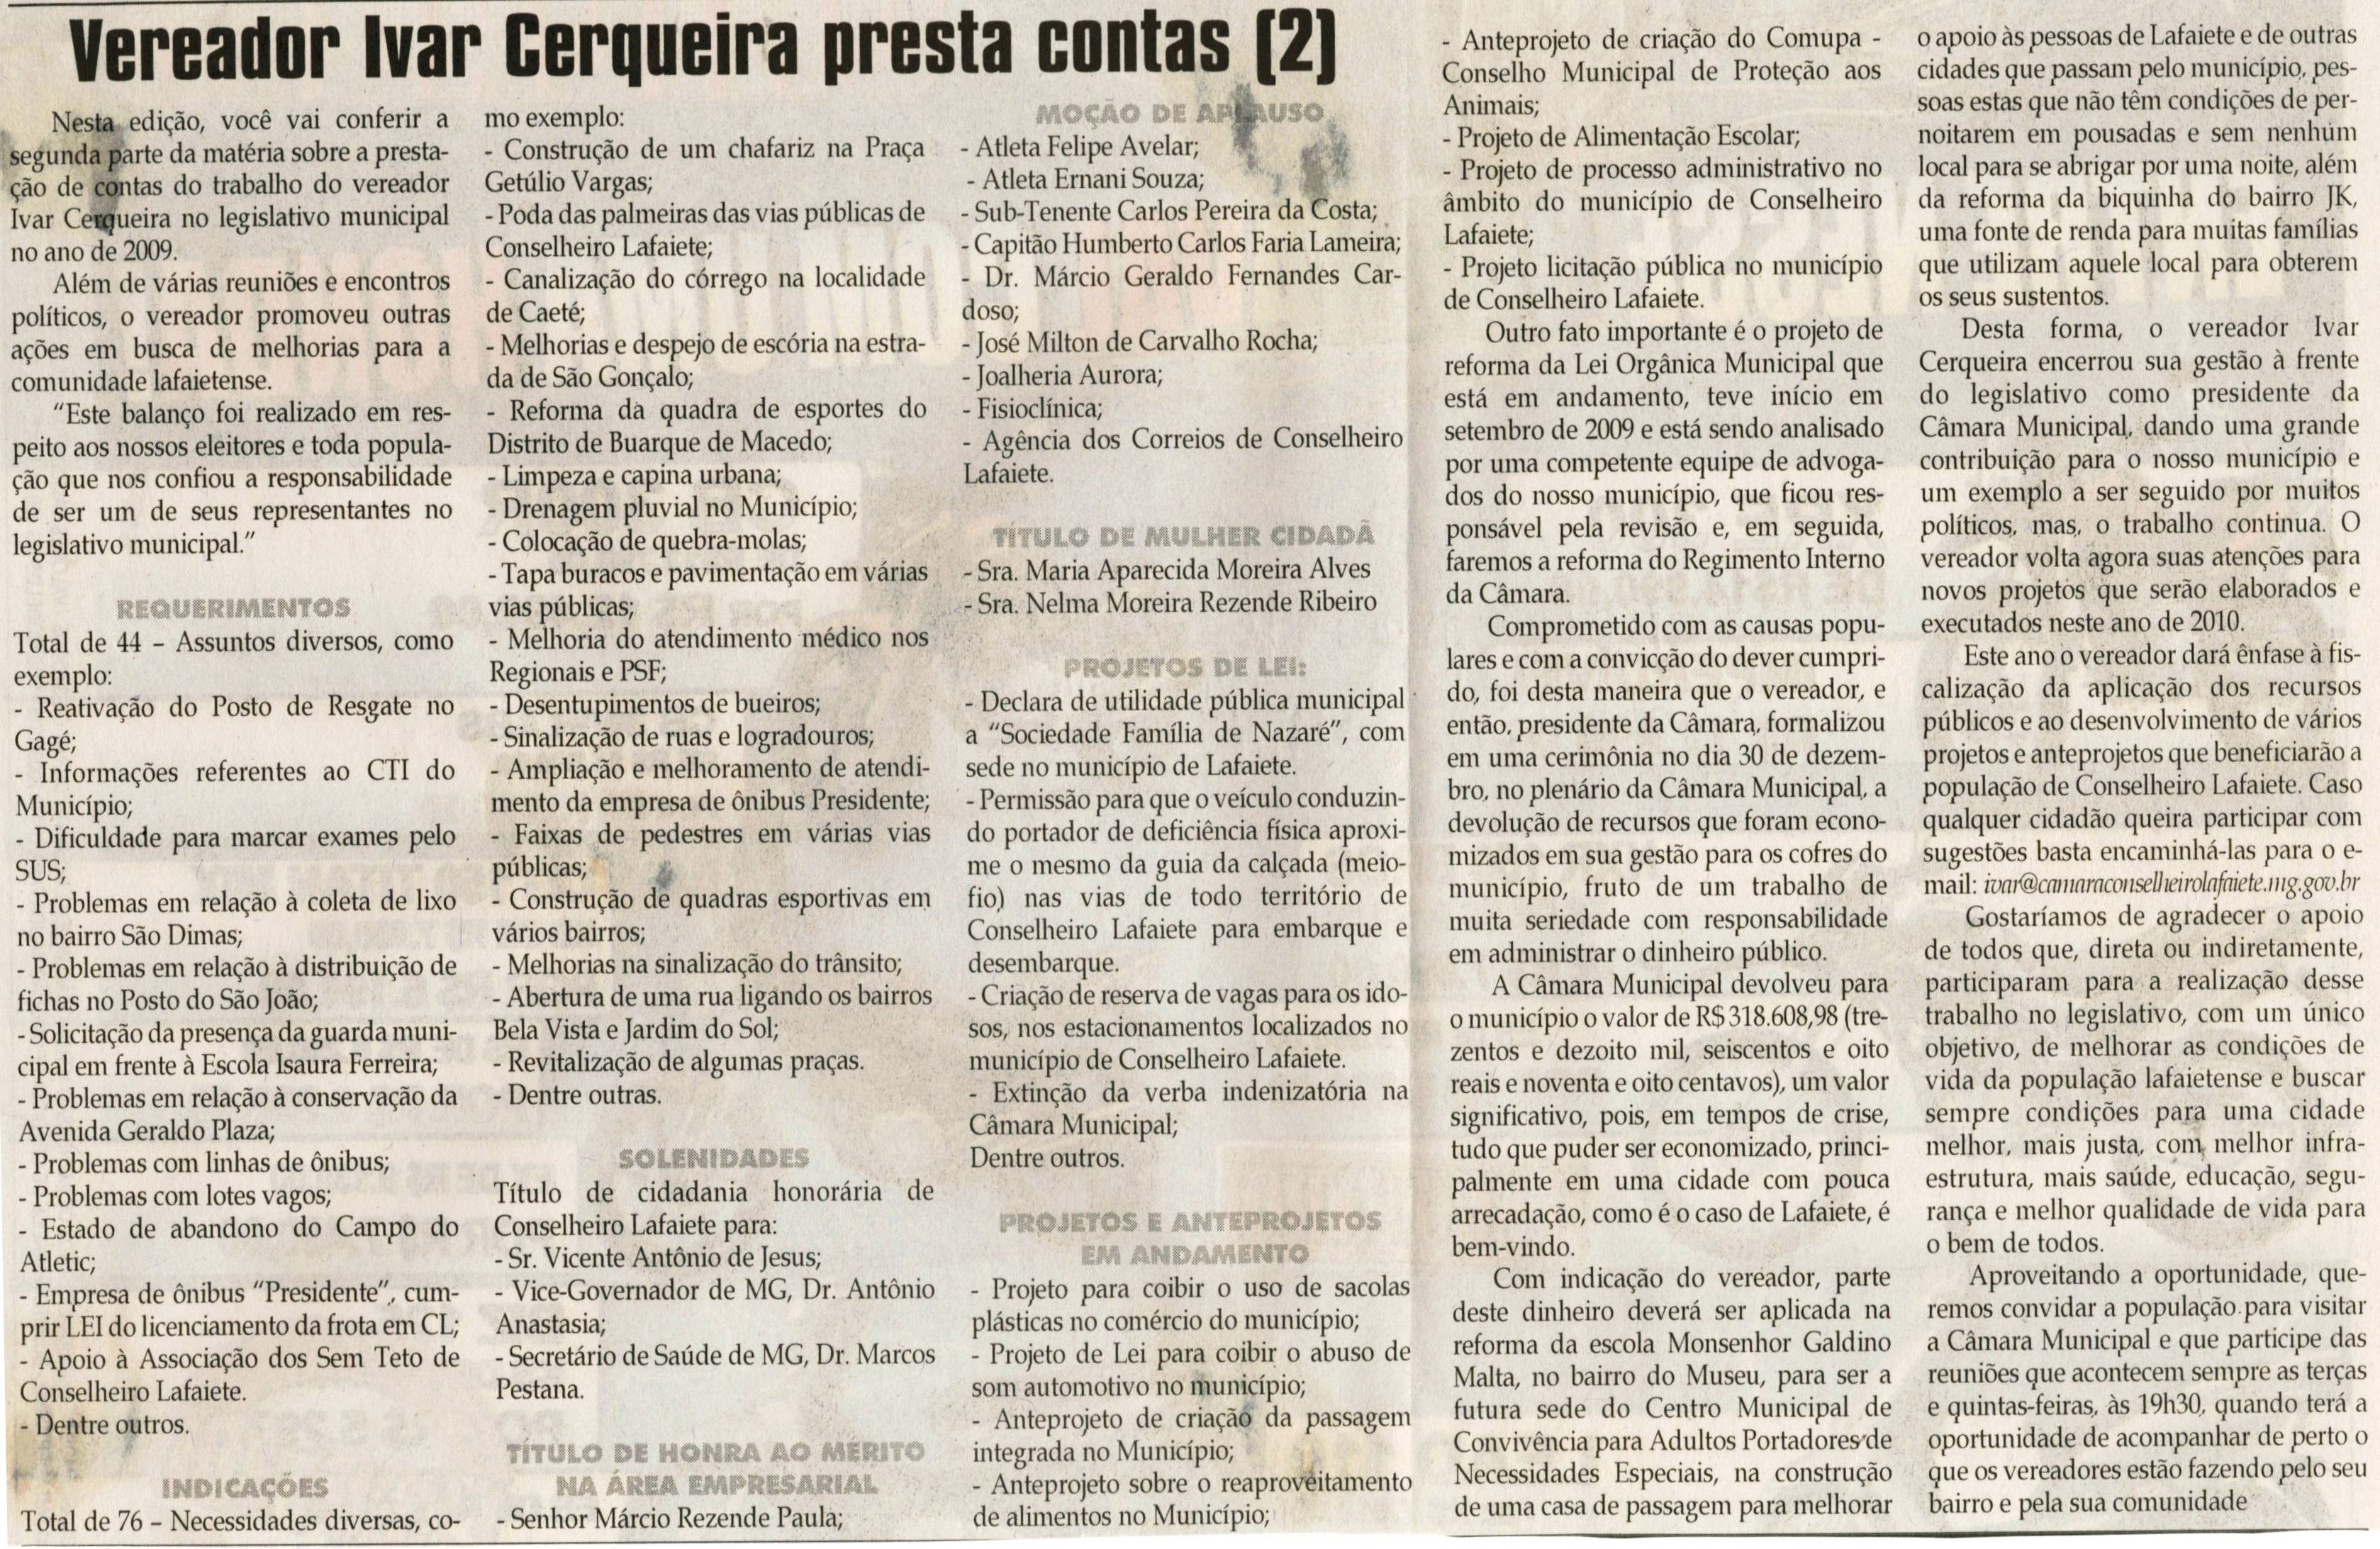 Vereador Ivar Cerqueira presta contas 2. Jornal Correio da Cidade, Conselheiro Lafaiete,  13 fev. 2010, p. 04.